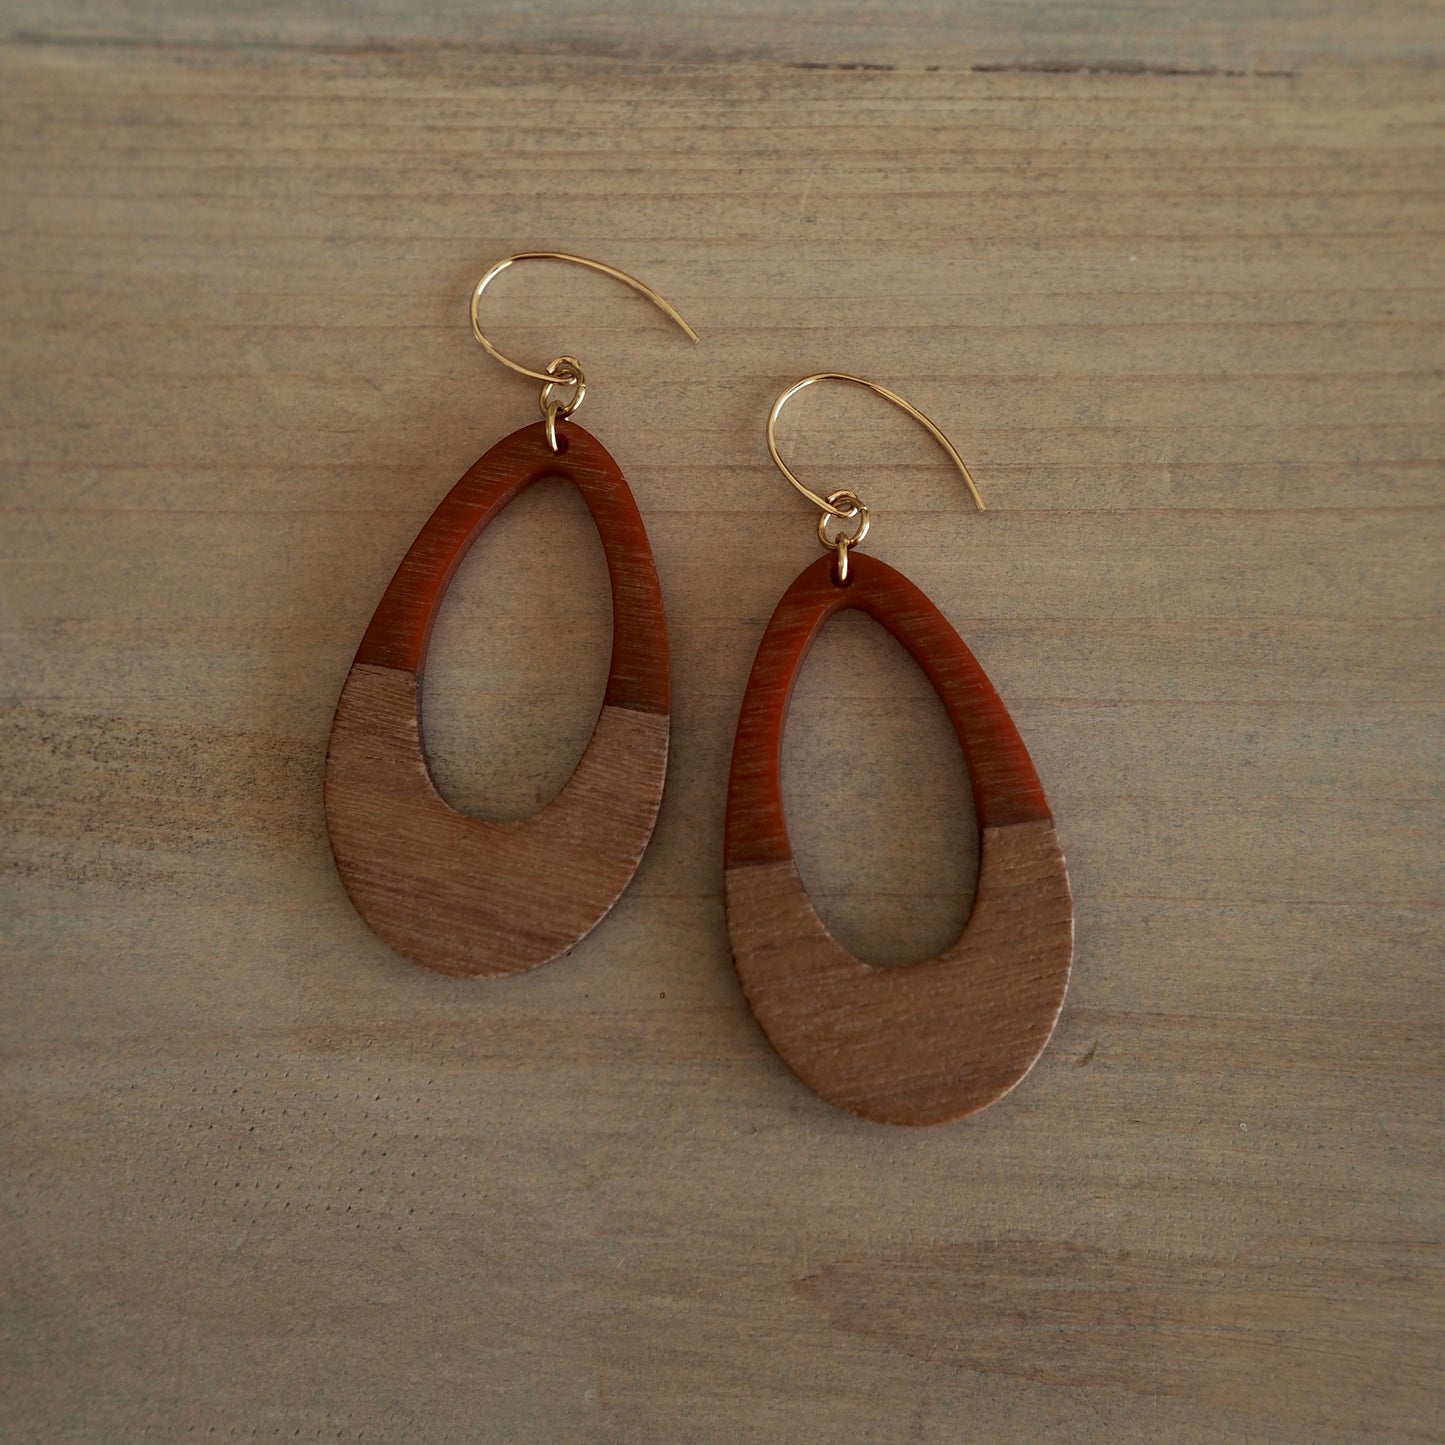 Large Teardrop earrings in rust and wood by Wallis Designs